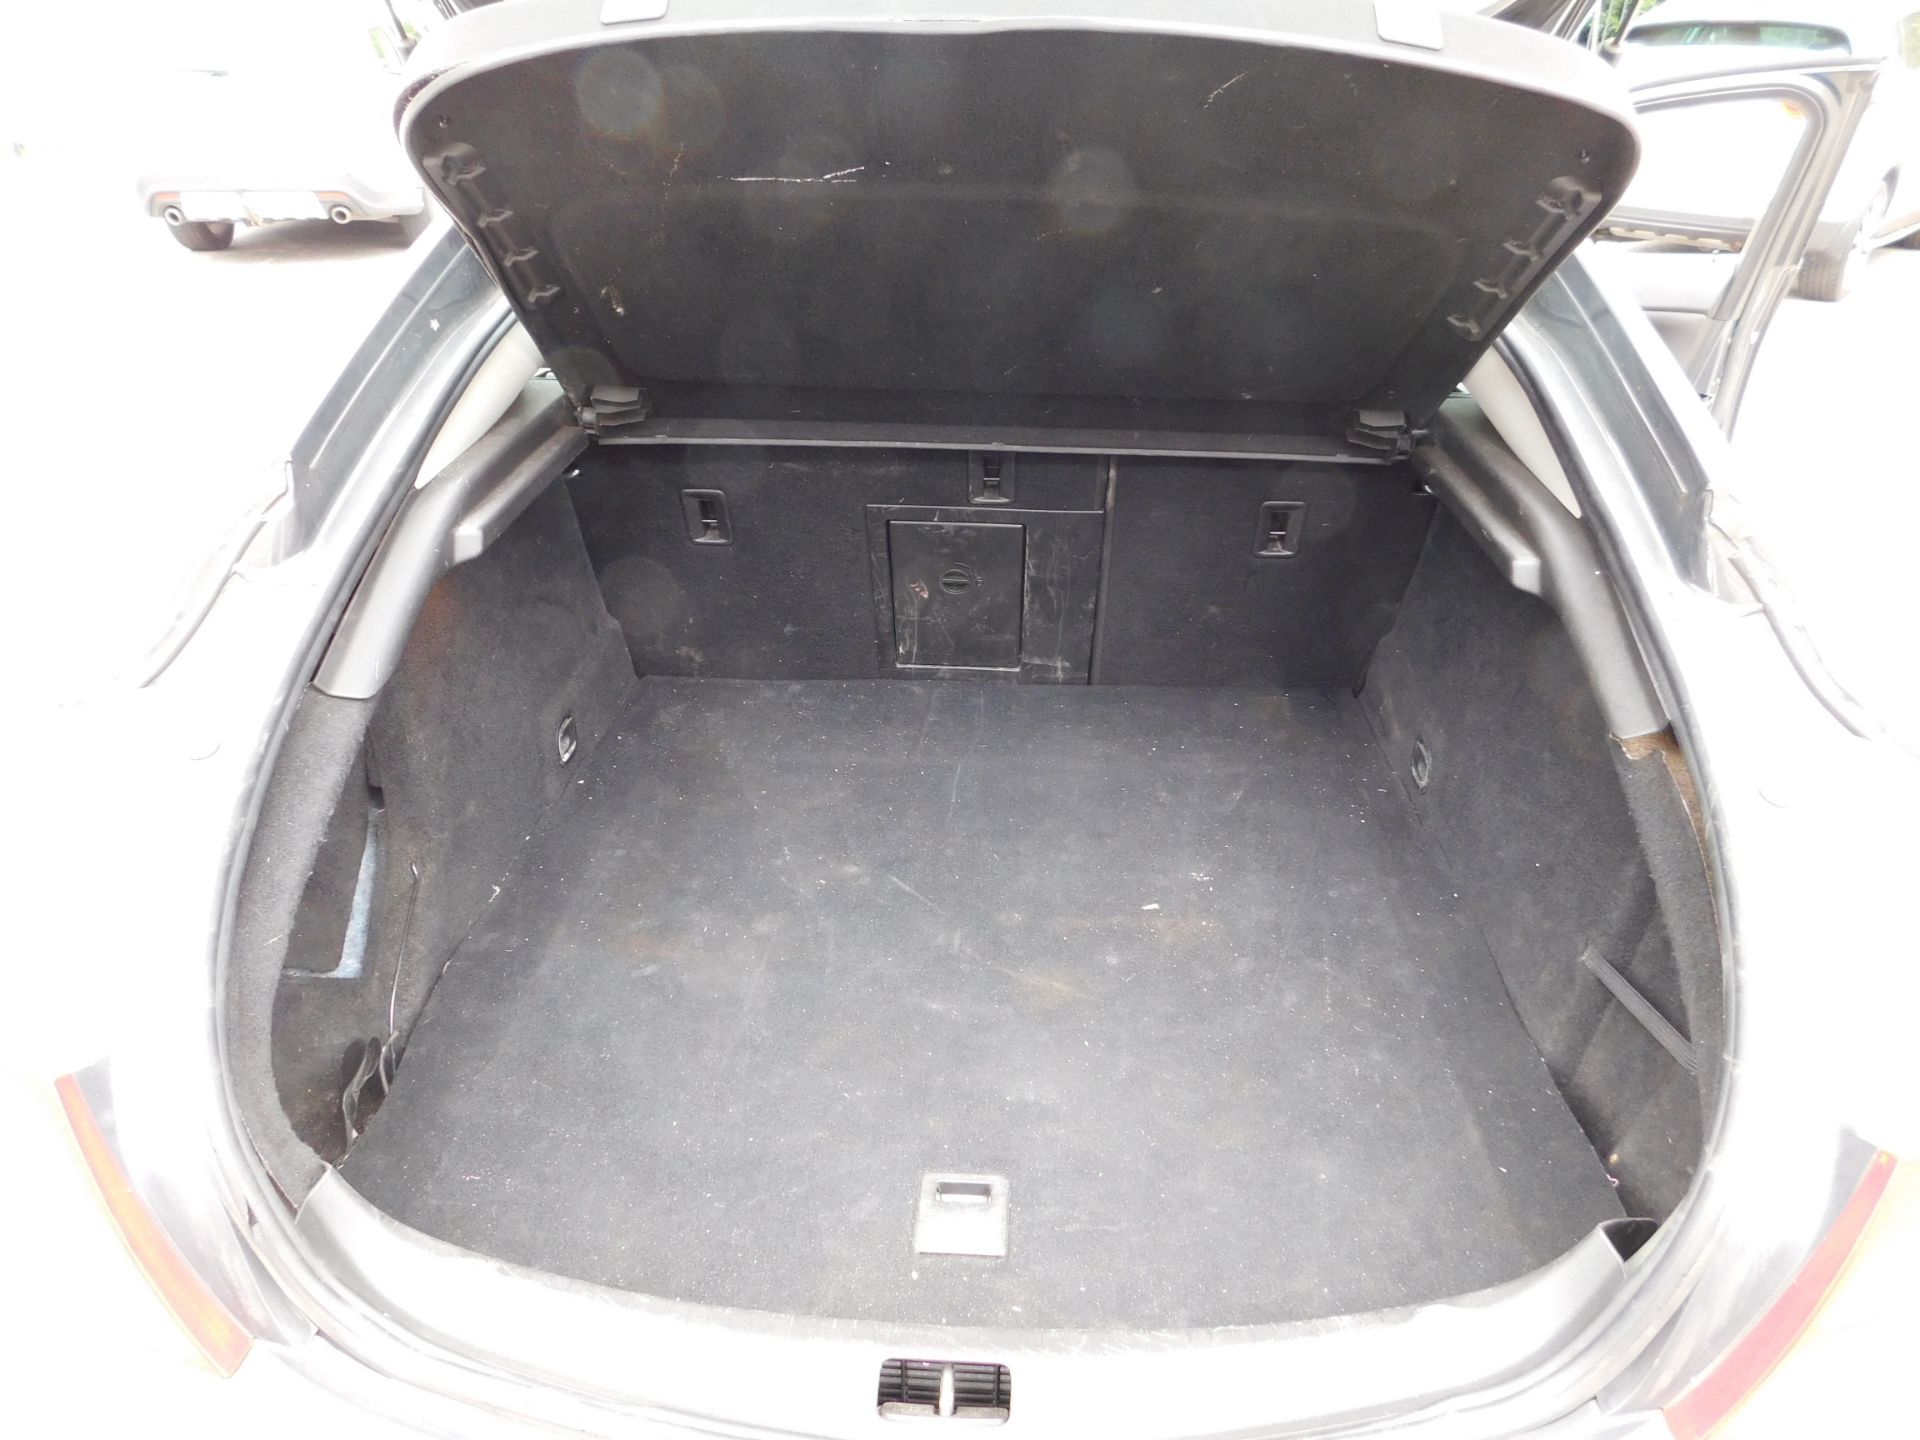 Vauxhall Insignia SRI 2.0CDTI five door hatchback, - Image 16 of 16